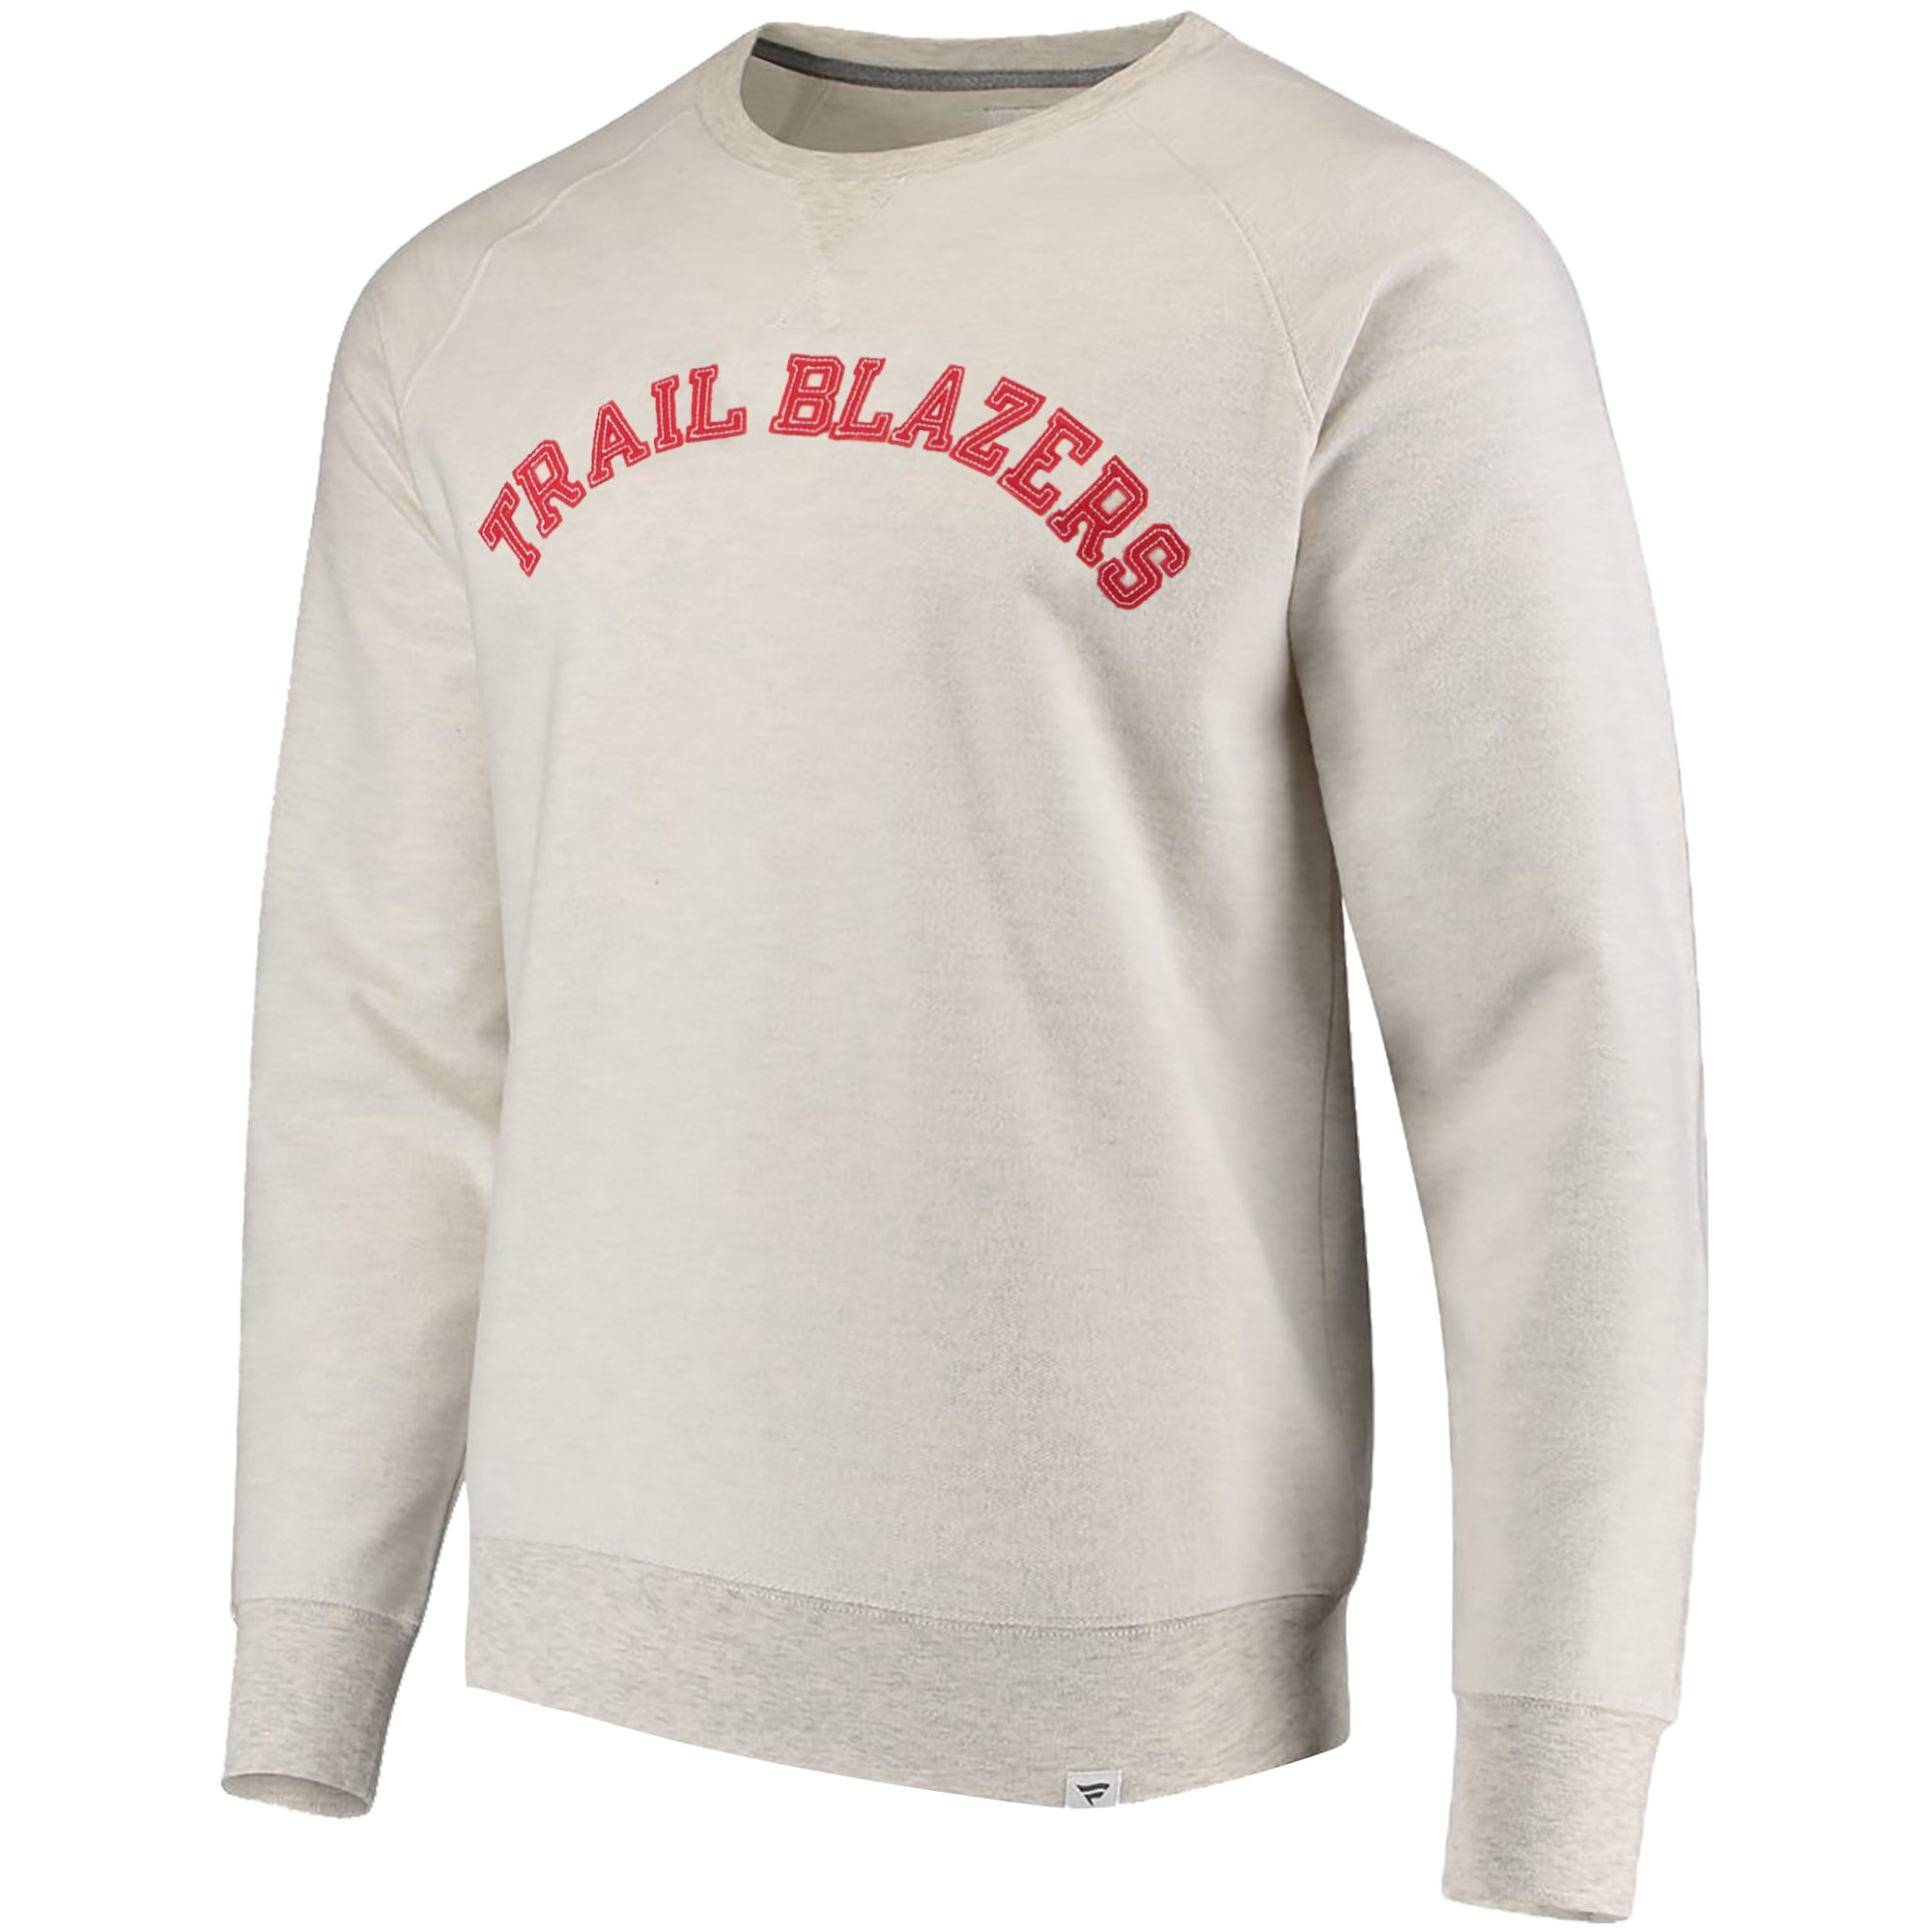 trail blazers sweater